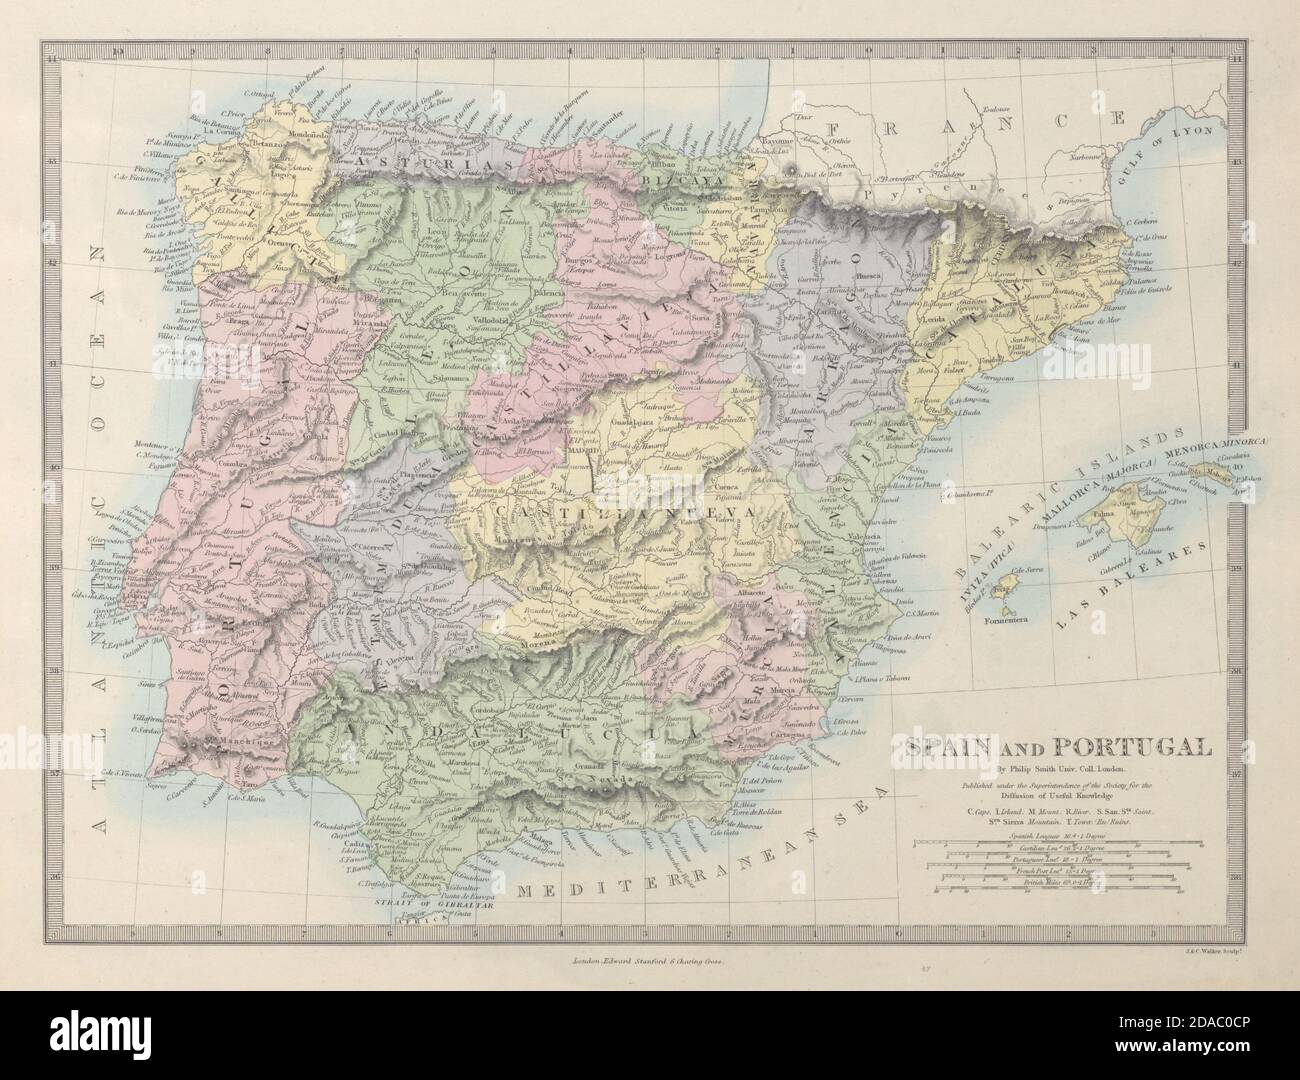 IBERIA. Spagna e Portogallo mostrano le province. SDUK 1857 vecchia mappa antica Foto Stock